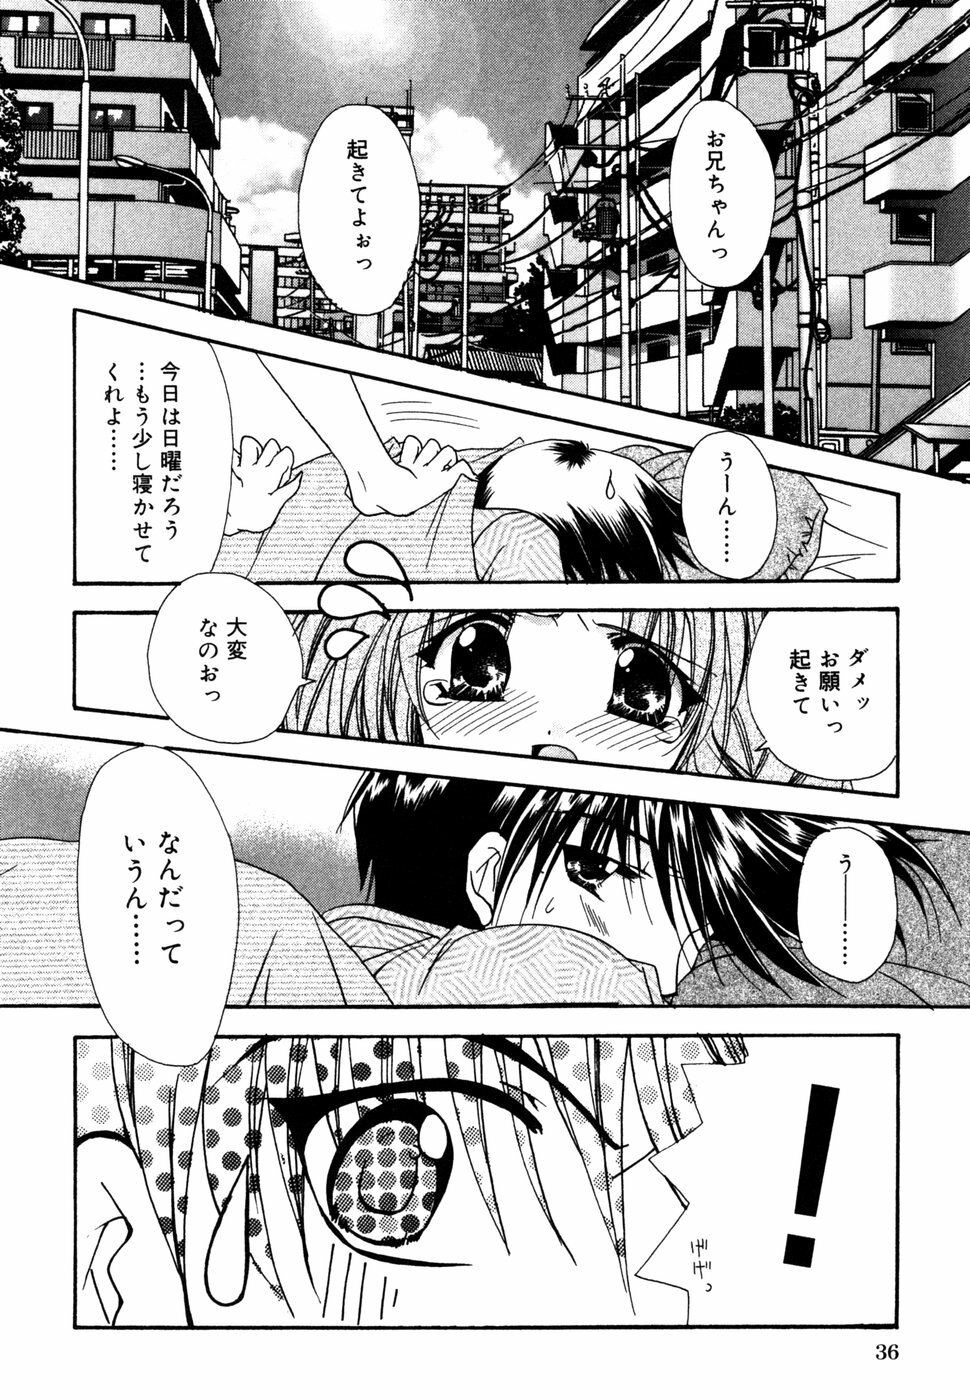 [Anthology] Himitsu no Tobira 5 Kinshin Ai Anthology (The Secret Door) page 39 full